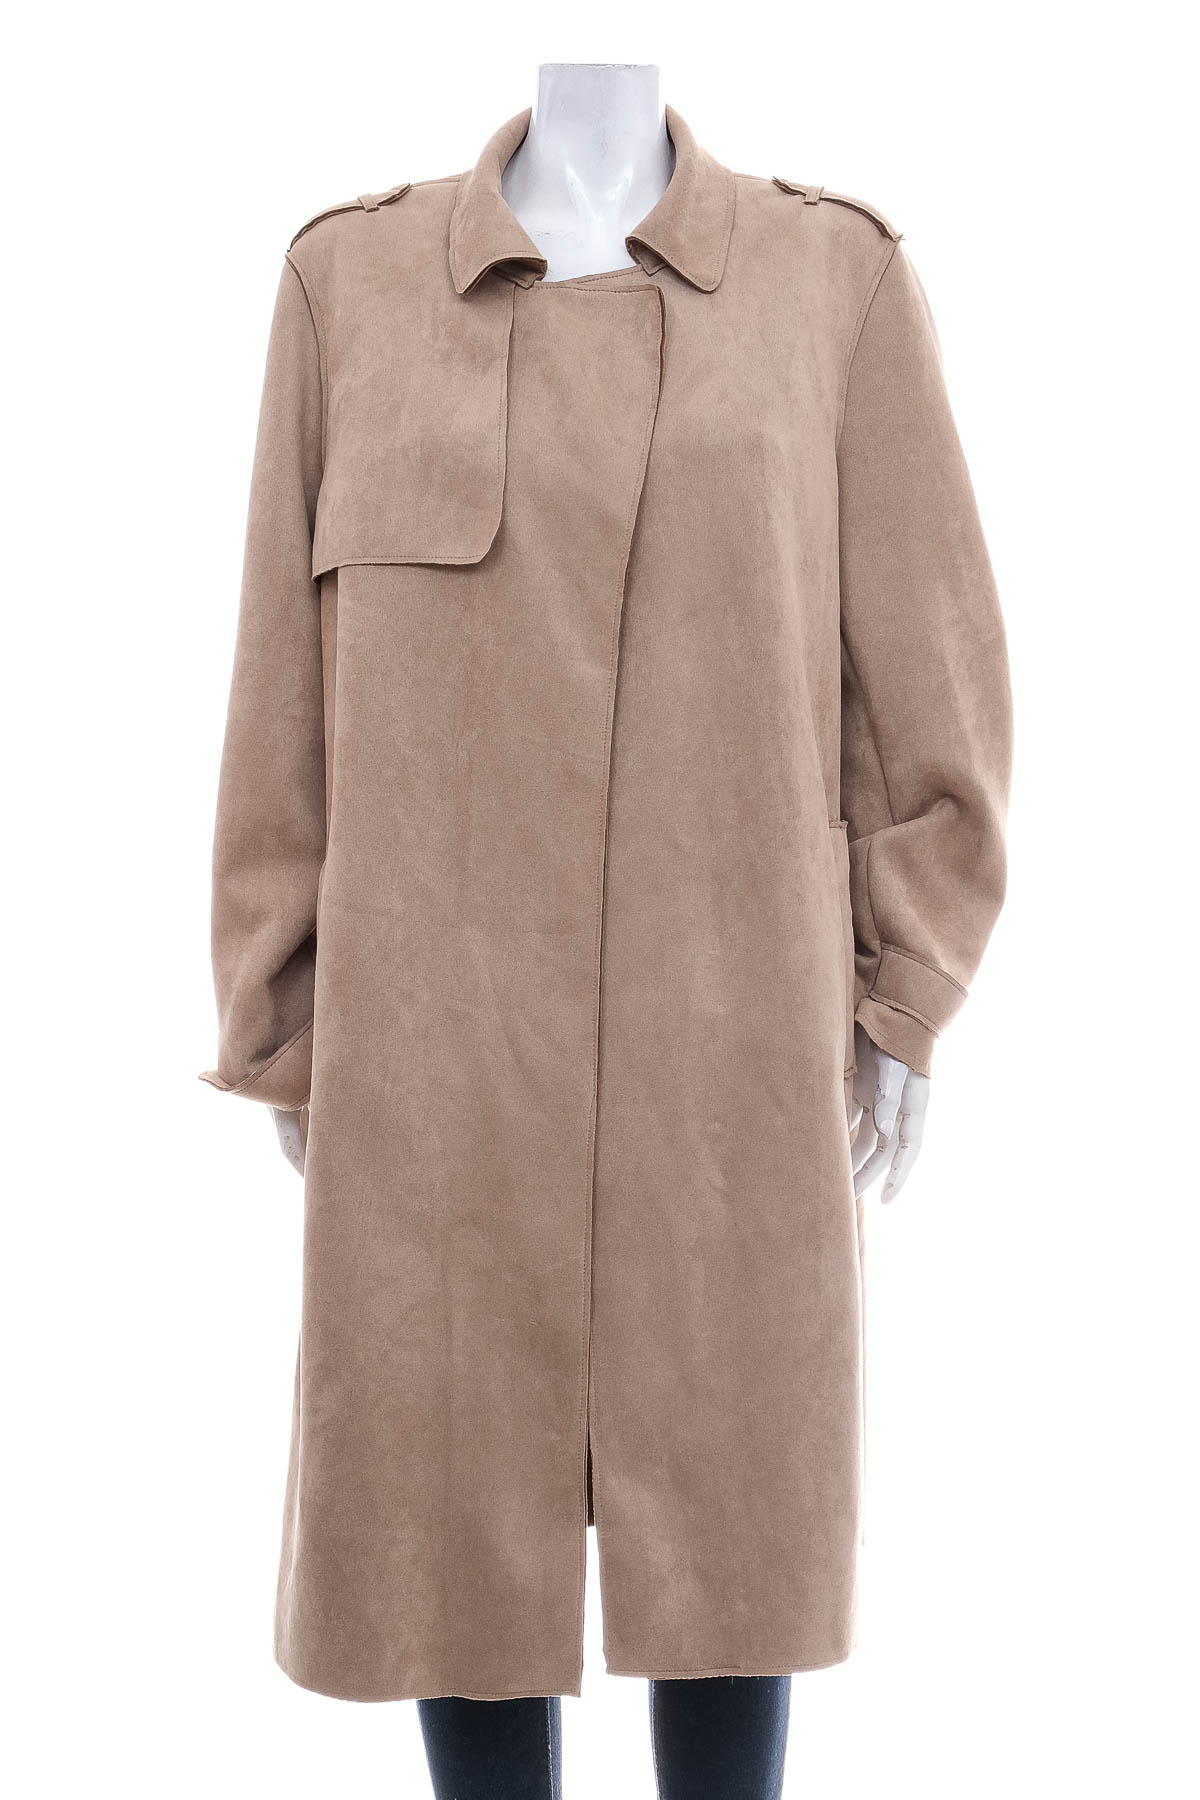 Women's coat - C&A - 0